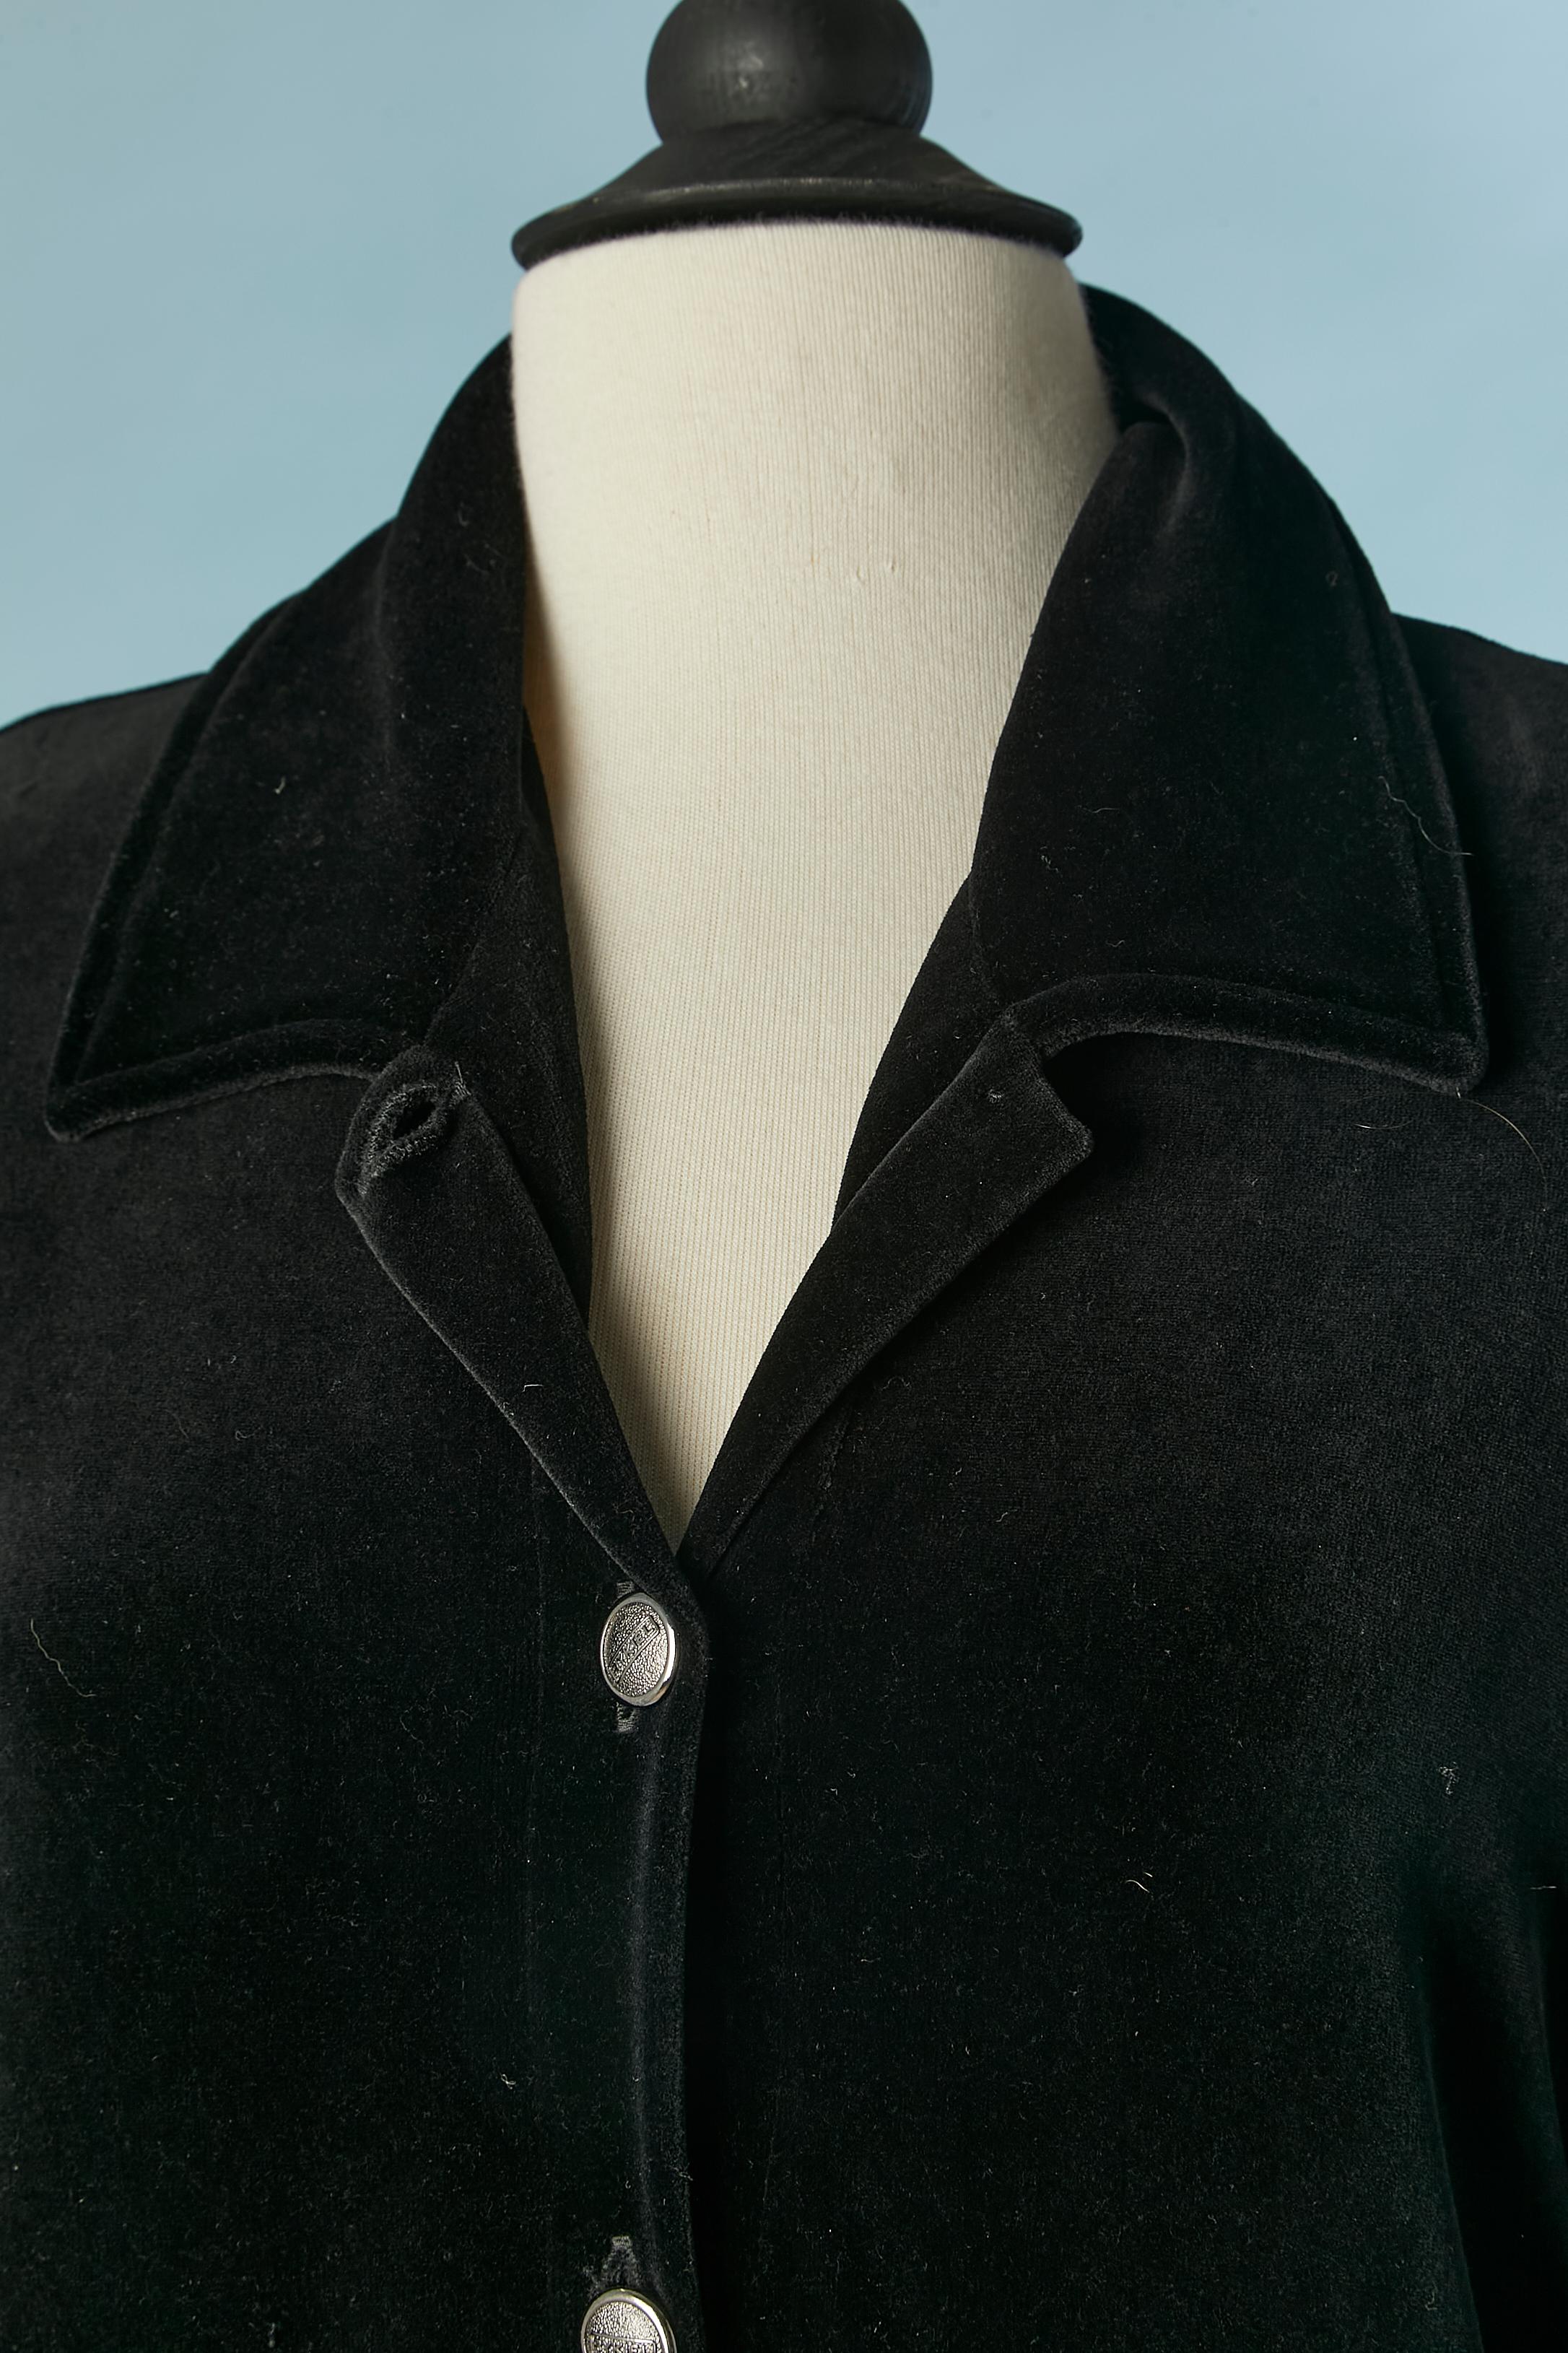 Schwarzer einreihiger Mantel aus Schwamm-Samt . Schulter-Pads. Knöpfe mit Markenzeichen. Tasche mit Reißverschluss. Äußere Absteppung. 
GRÖSSE L 